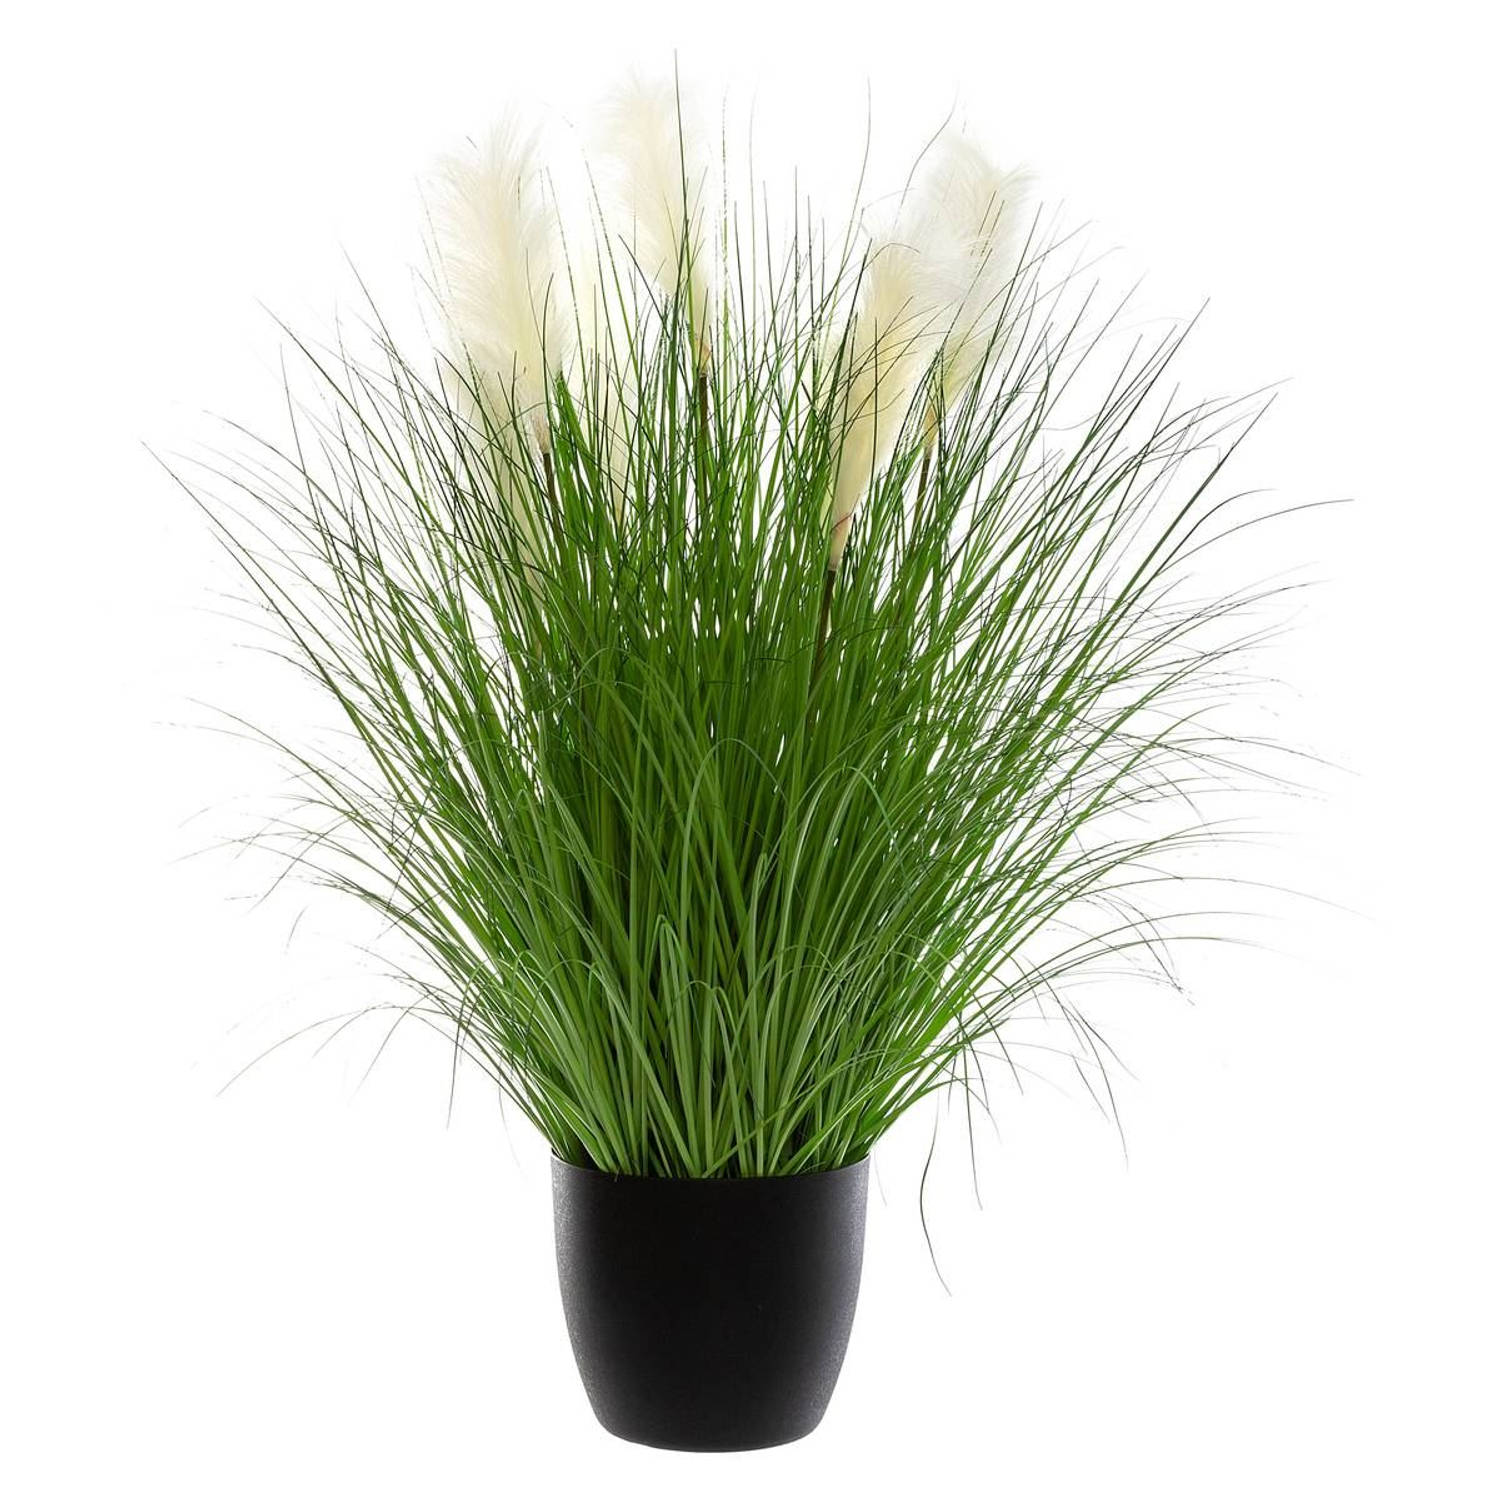 Kunstplant siergras met witte pluimen groen/Wit - zwarte pot - Groot model - 105 cm Hoog